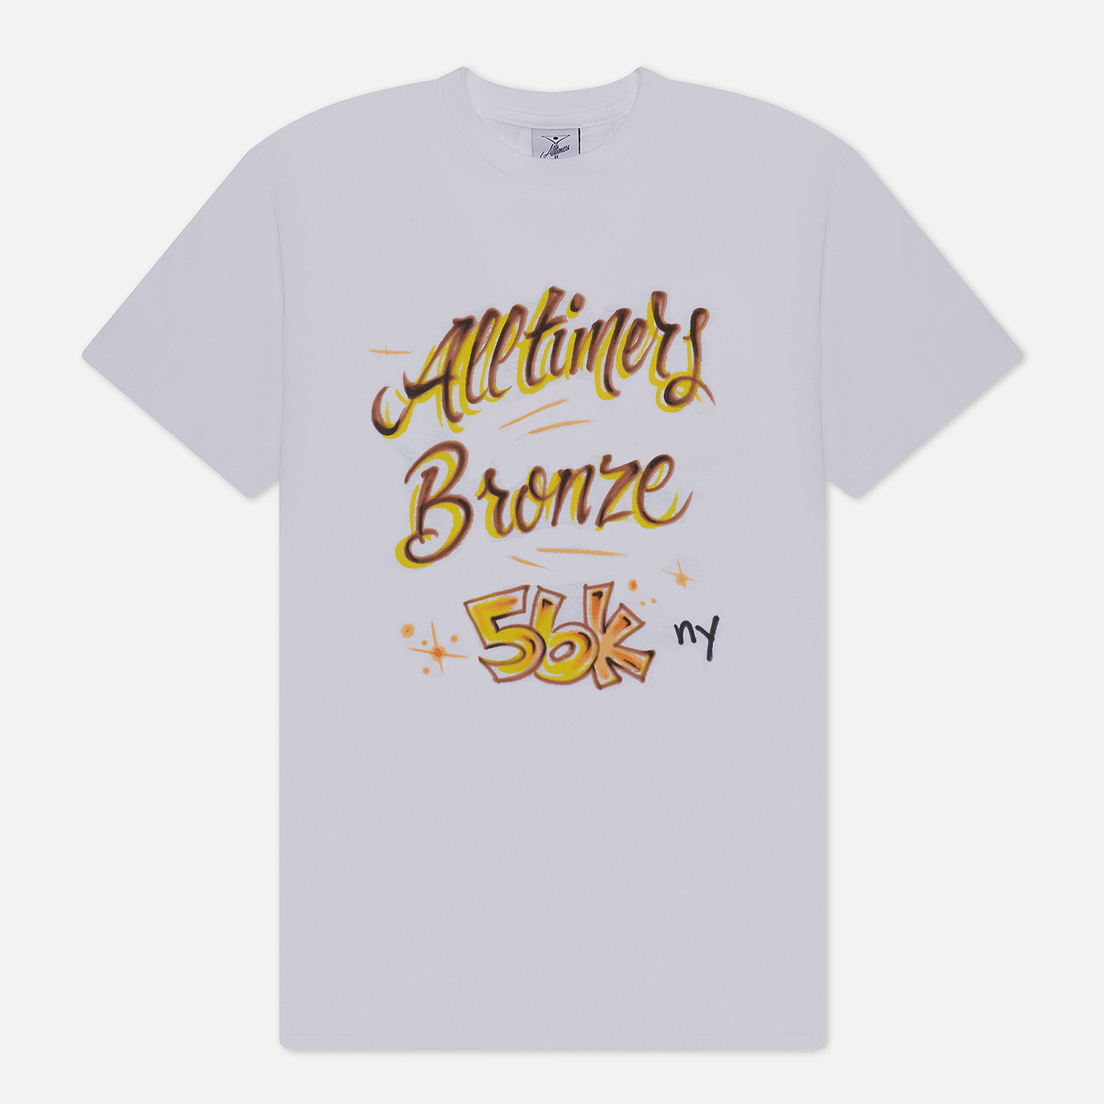 Alltimers Мужская футболка x Bronze 56K Lounge